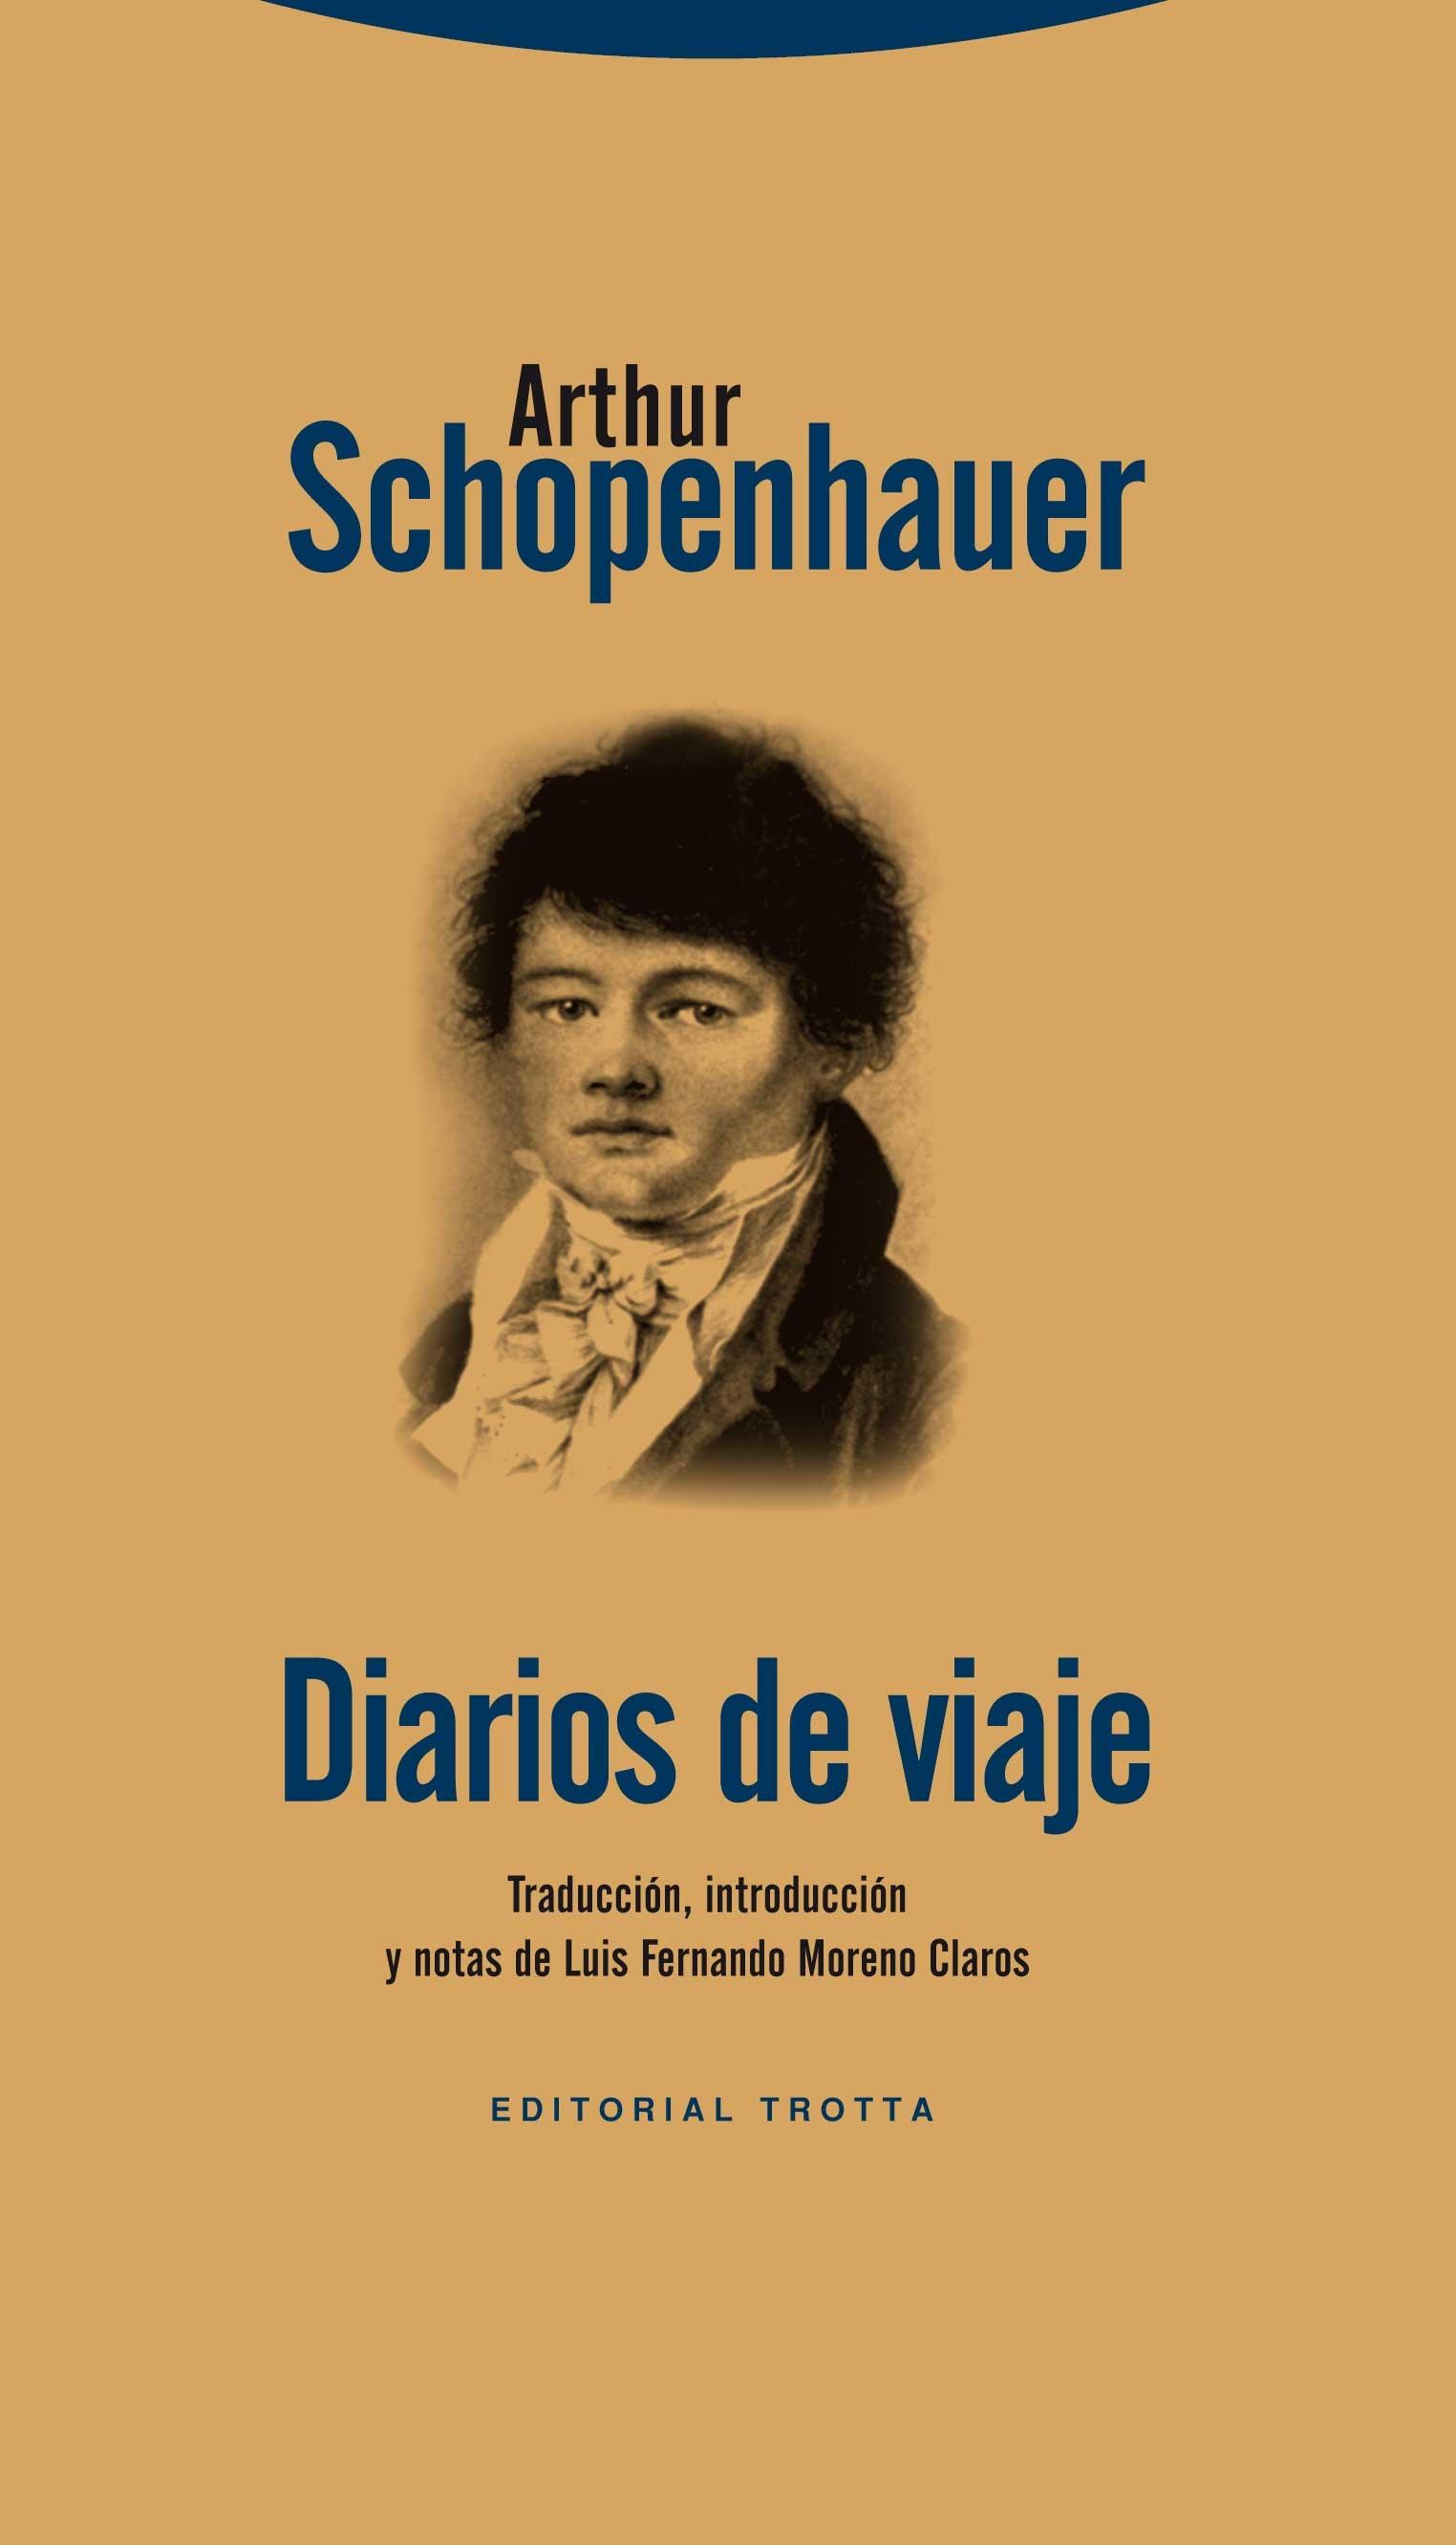 Diarios de viaje "Los Diarios de viaje de los años 1800 y 1803-1804"